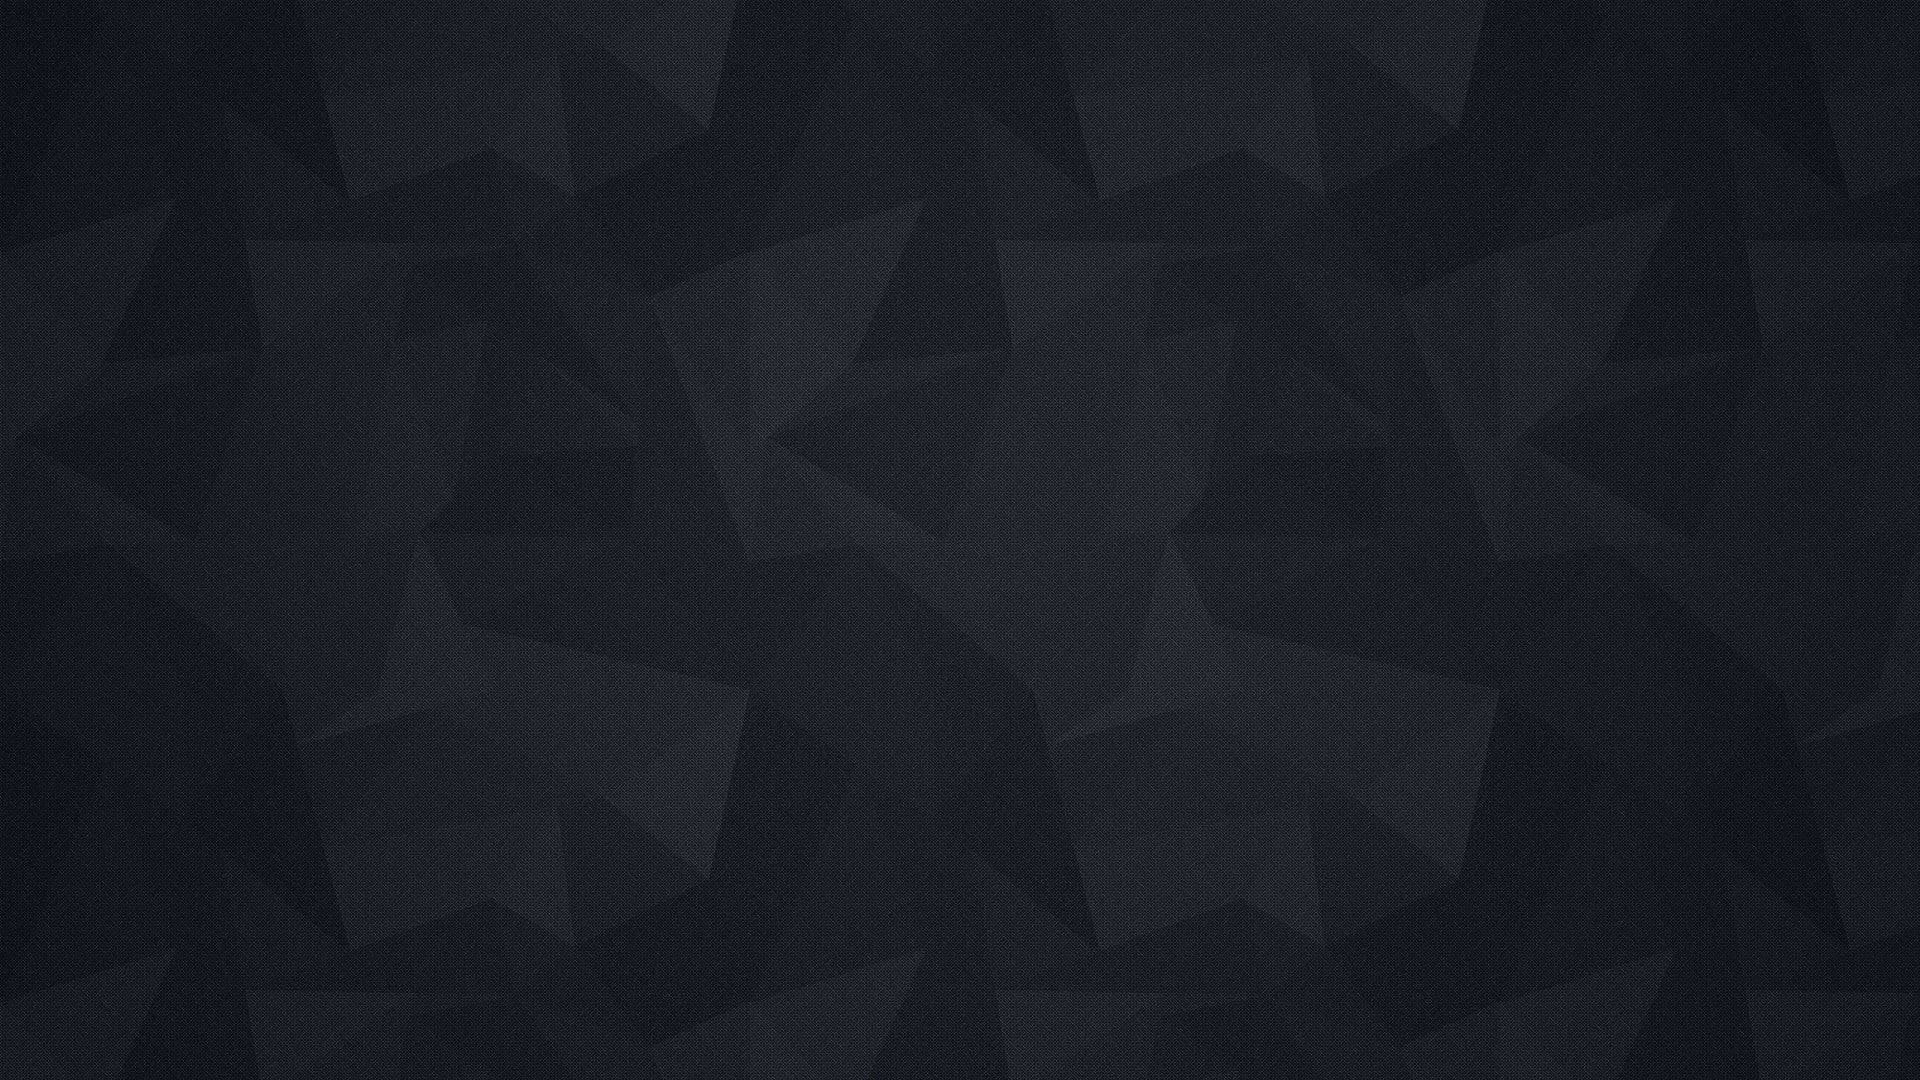 Minimalist Geometric Dark Wall Wallpaper